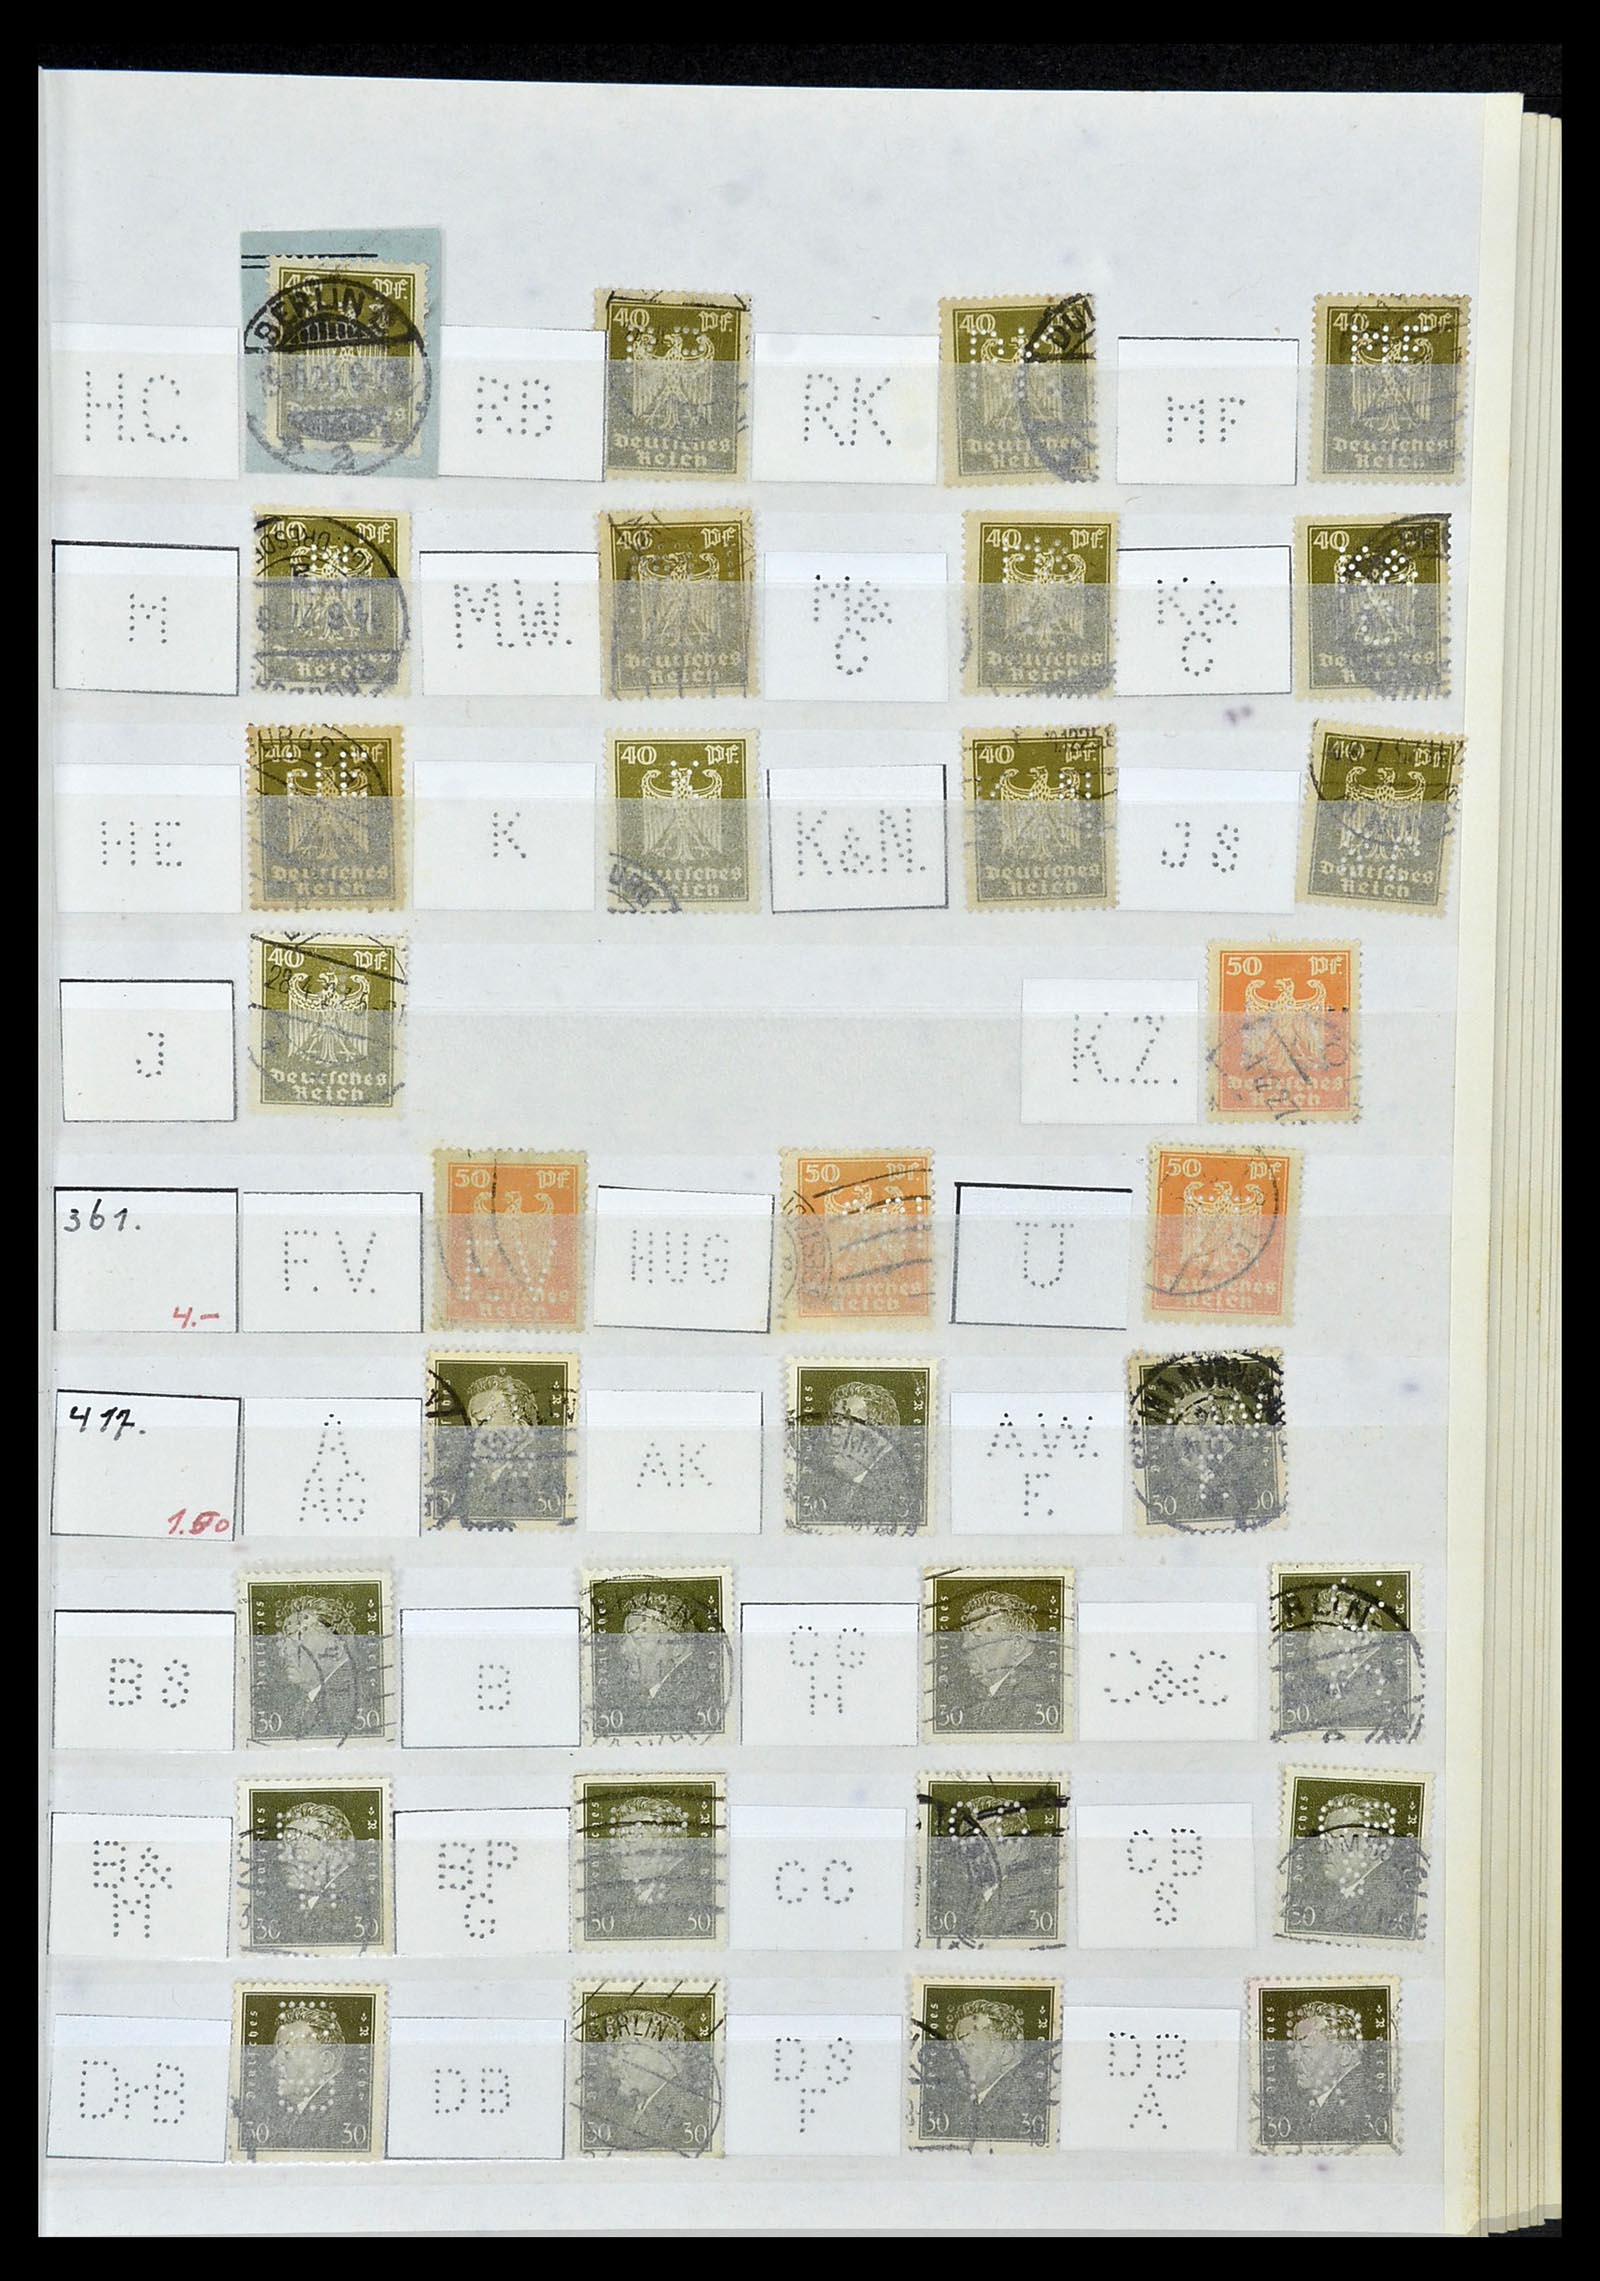 34071 039 - Stamp collection 34071 German Reich perfins 1923-1930.